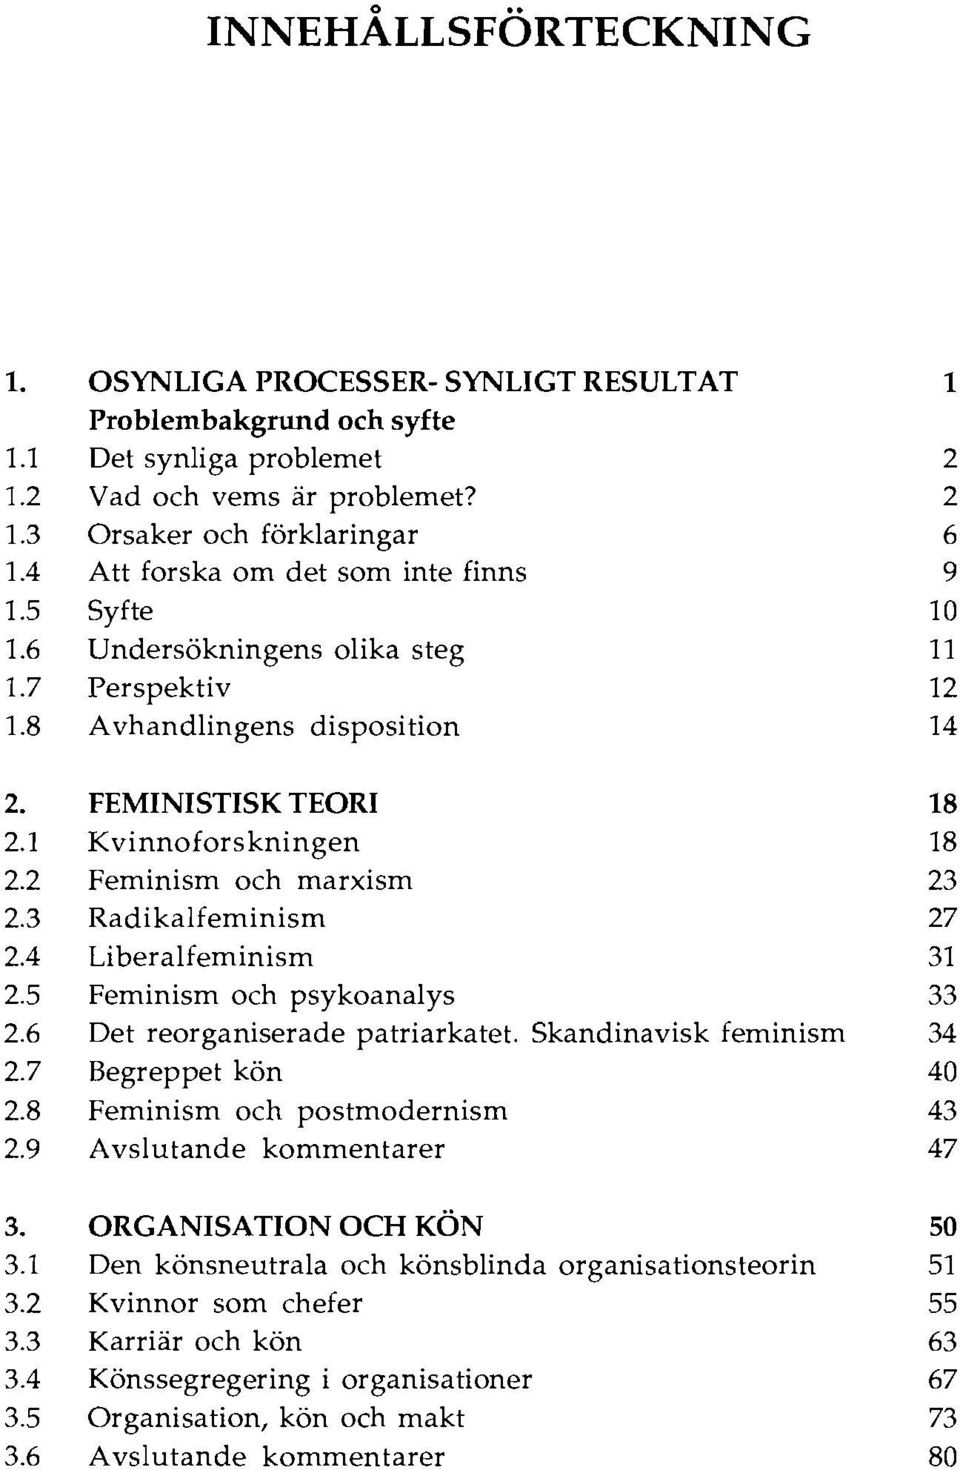 2 Feminism och marxism 23 2.3 Radikalfeminism 27 2.4 Liberalfeminism 31 2.5 Feminism och psykoanalys 33 2.6 Det reorganiserade patriarkatet. Skandinavisk feminism 34 2.7 Begreppet kön 40 2.